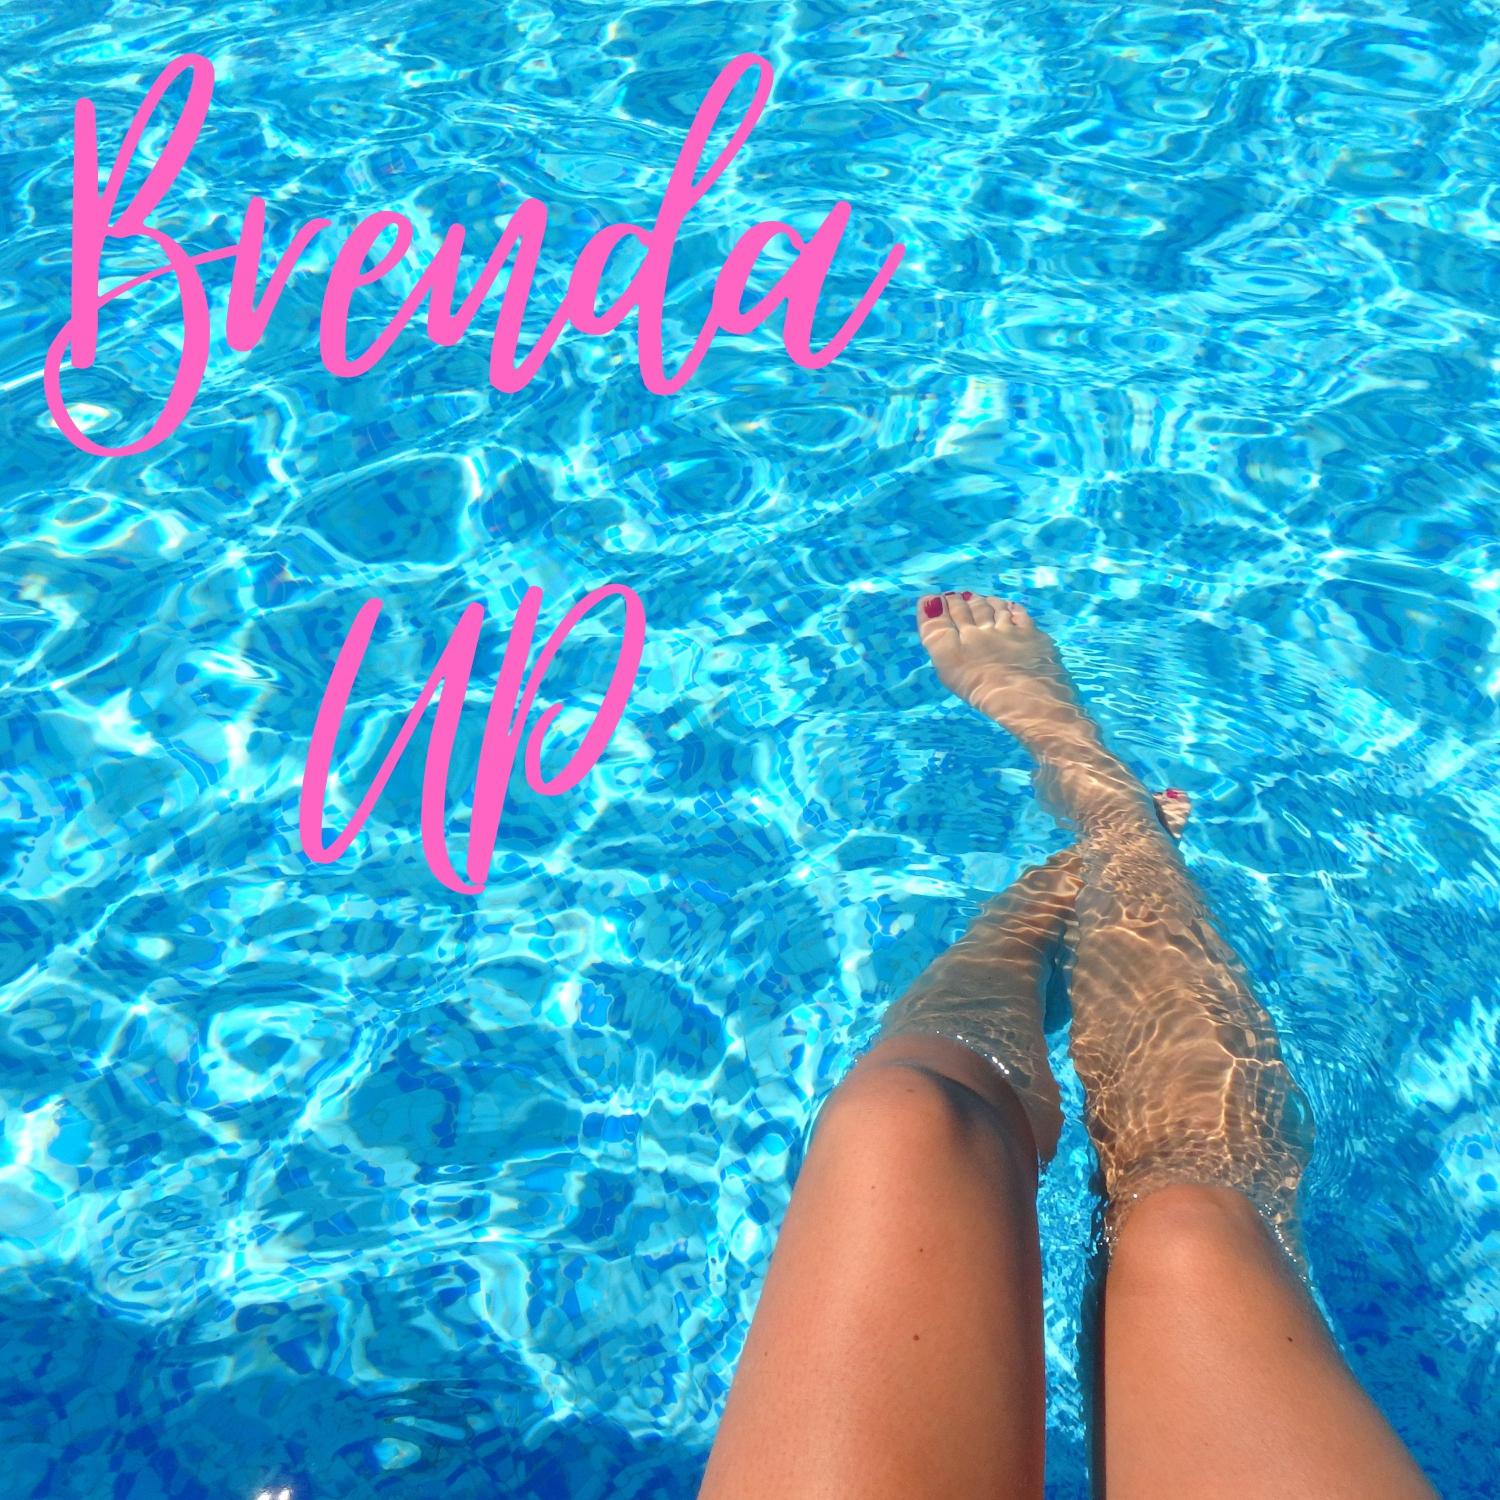 Brenda - Up